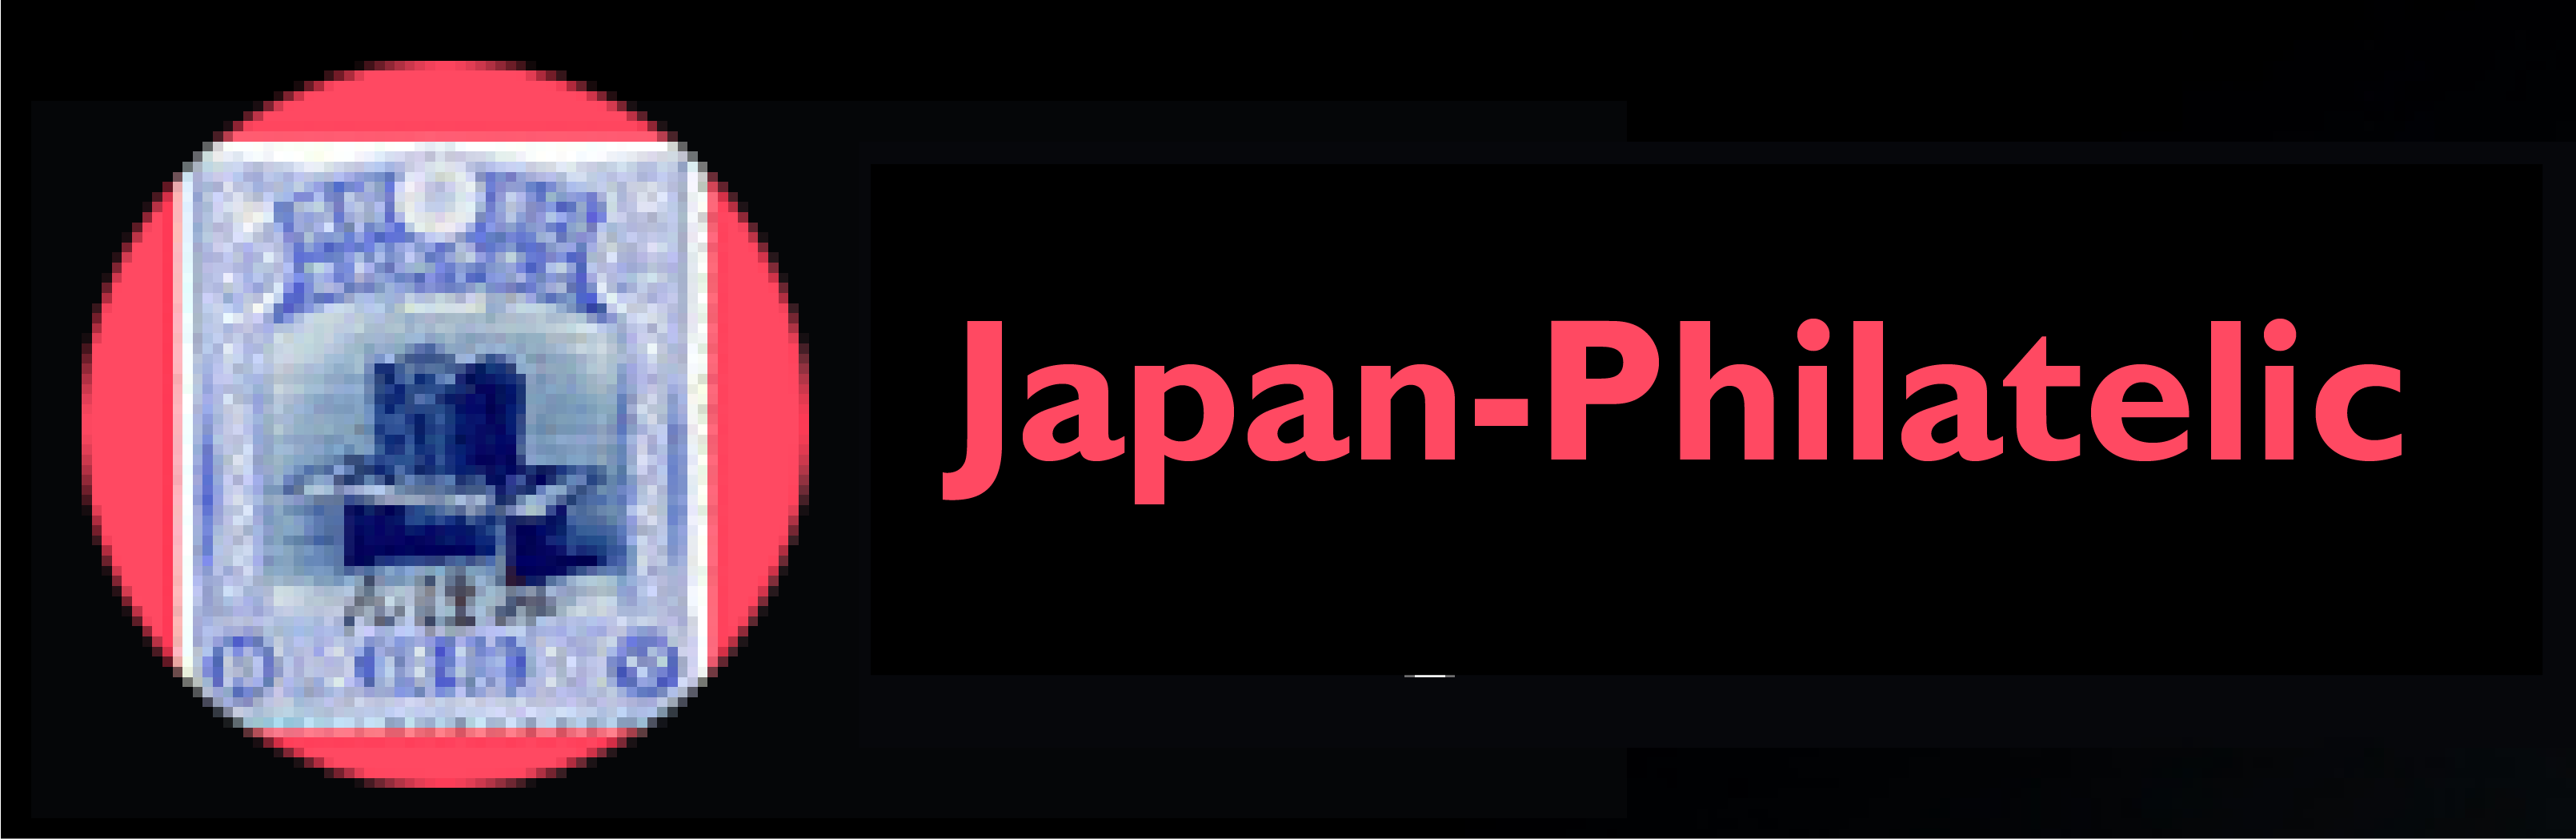 Japan-Philatelic / Kenneth G. Clark